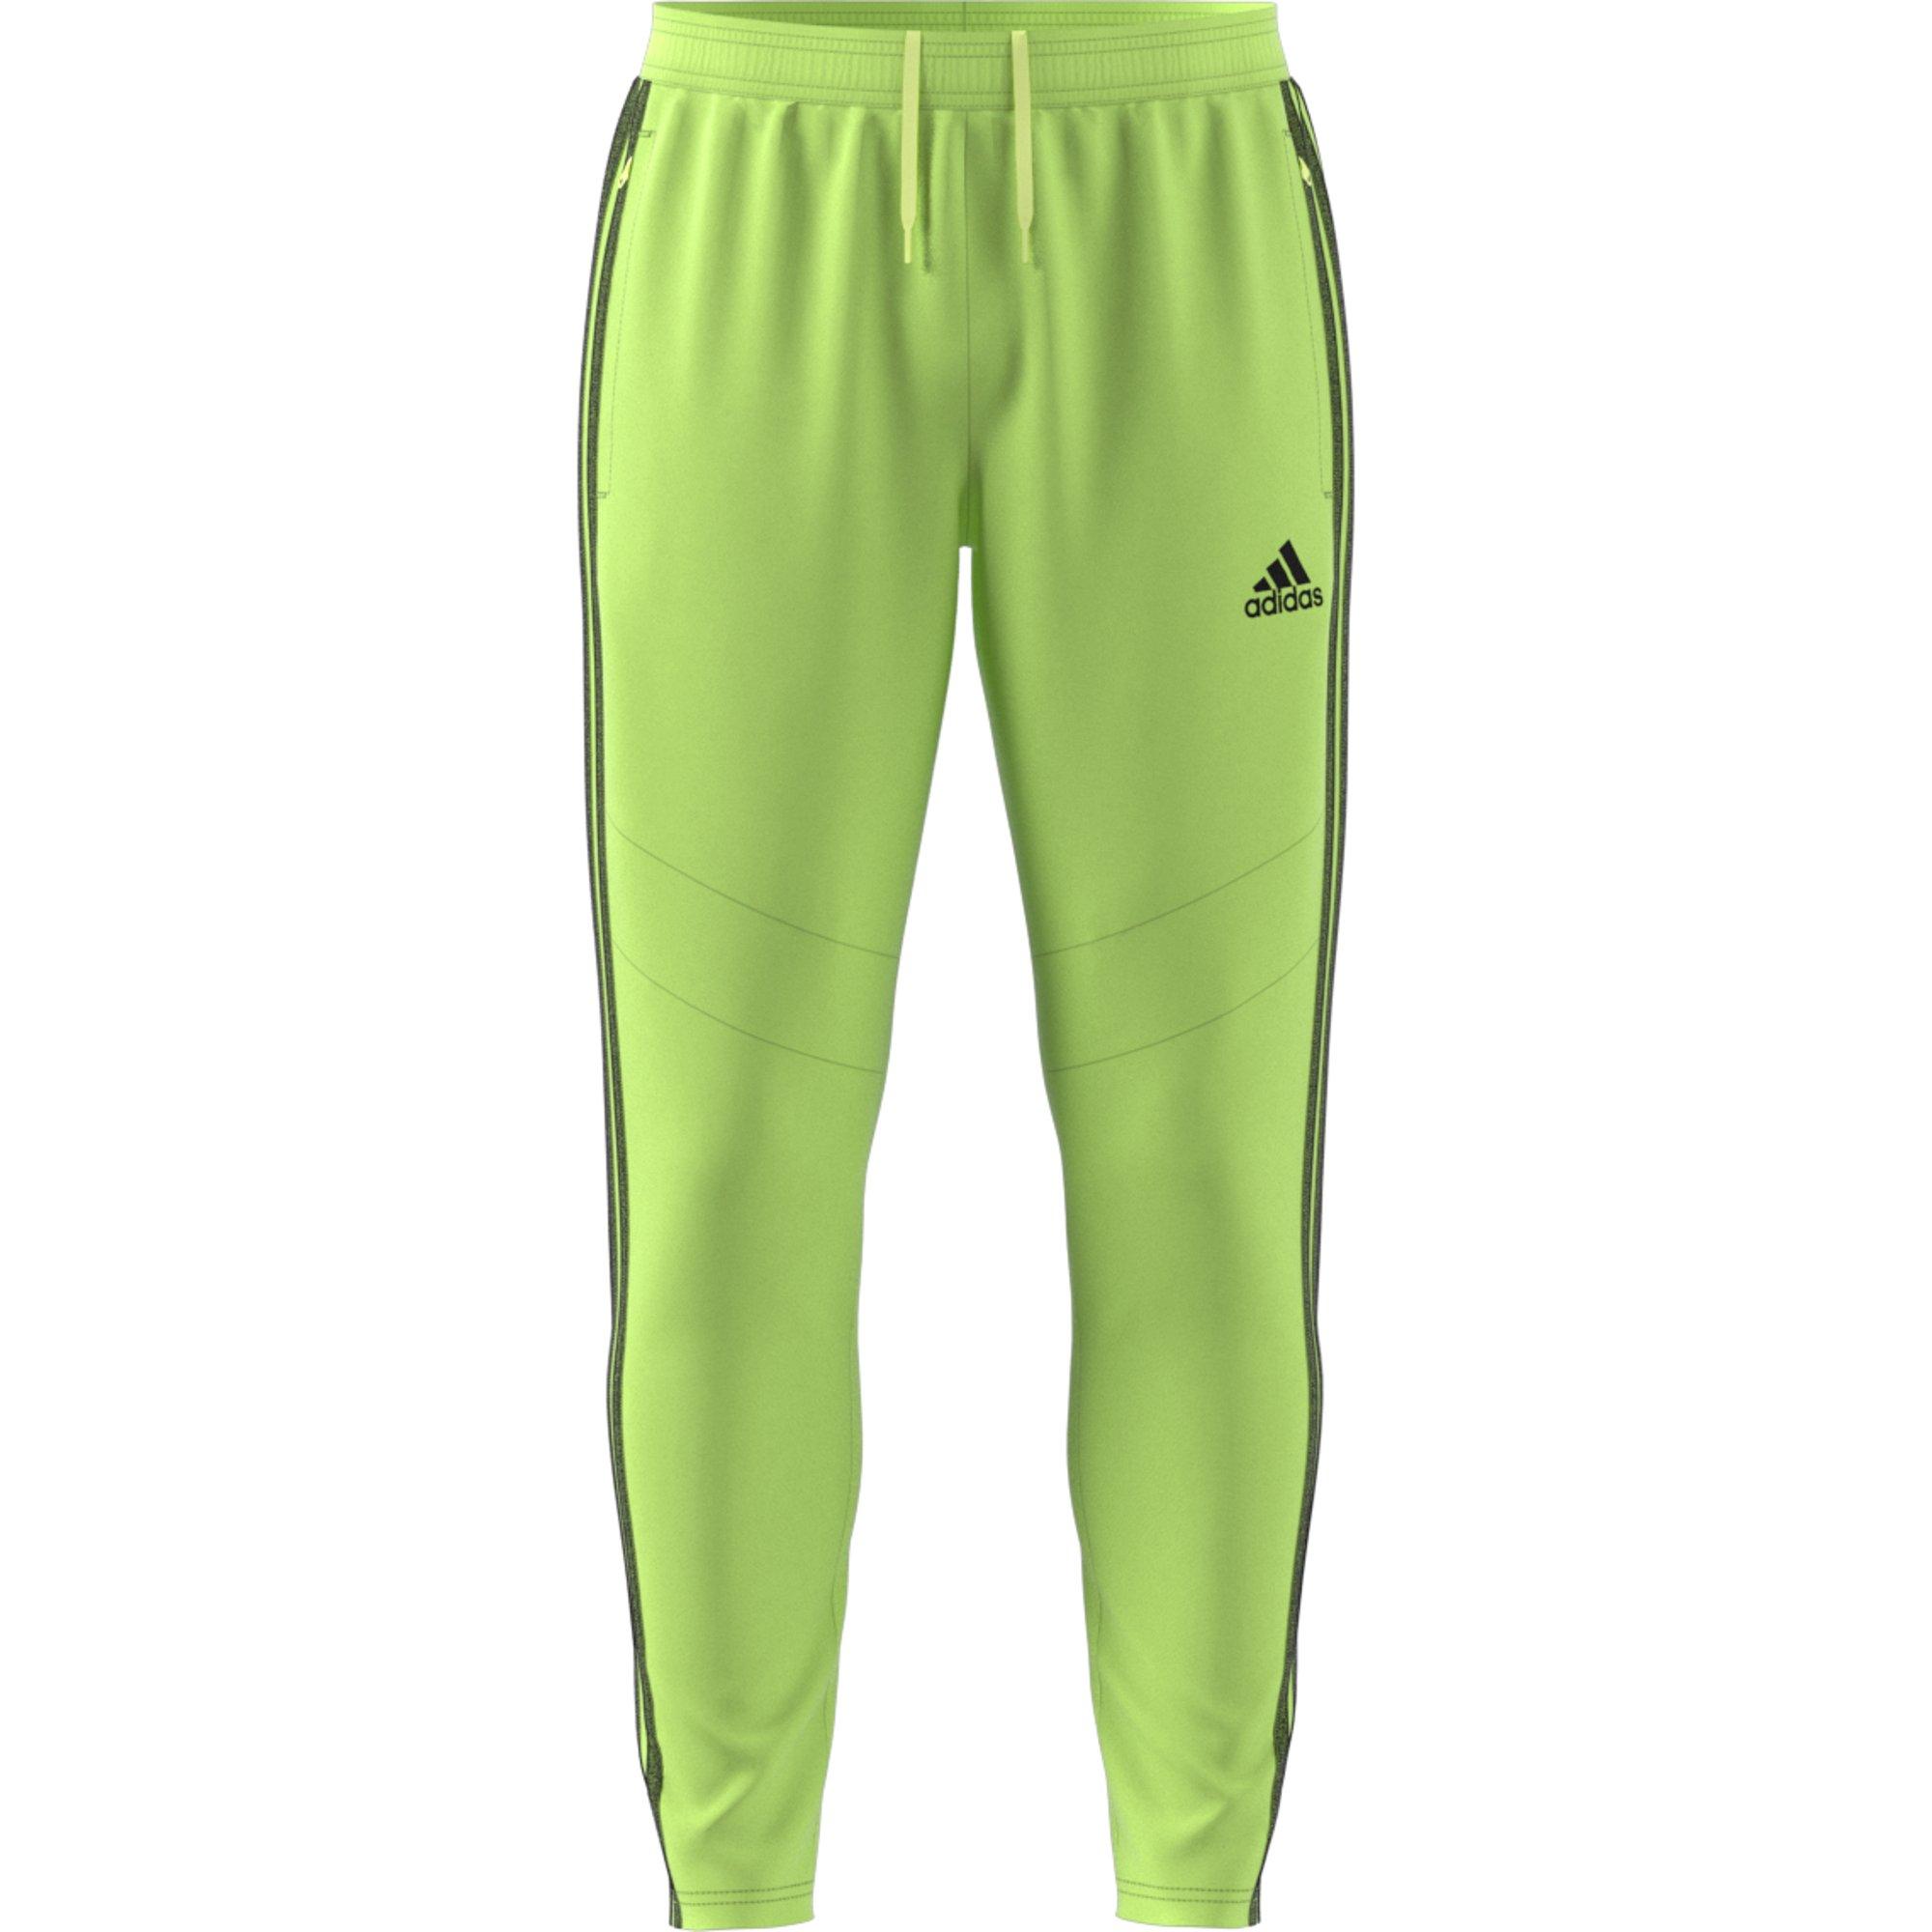 lime green adidas pants 